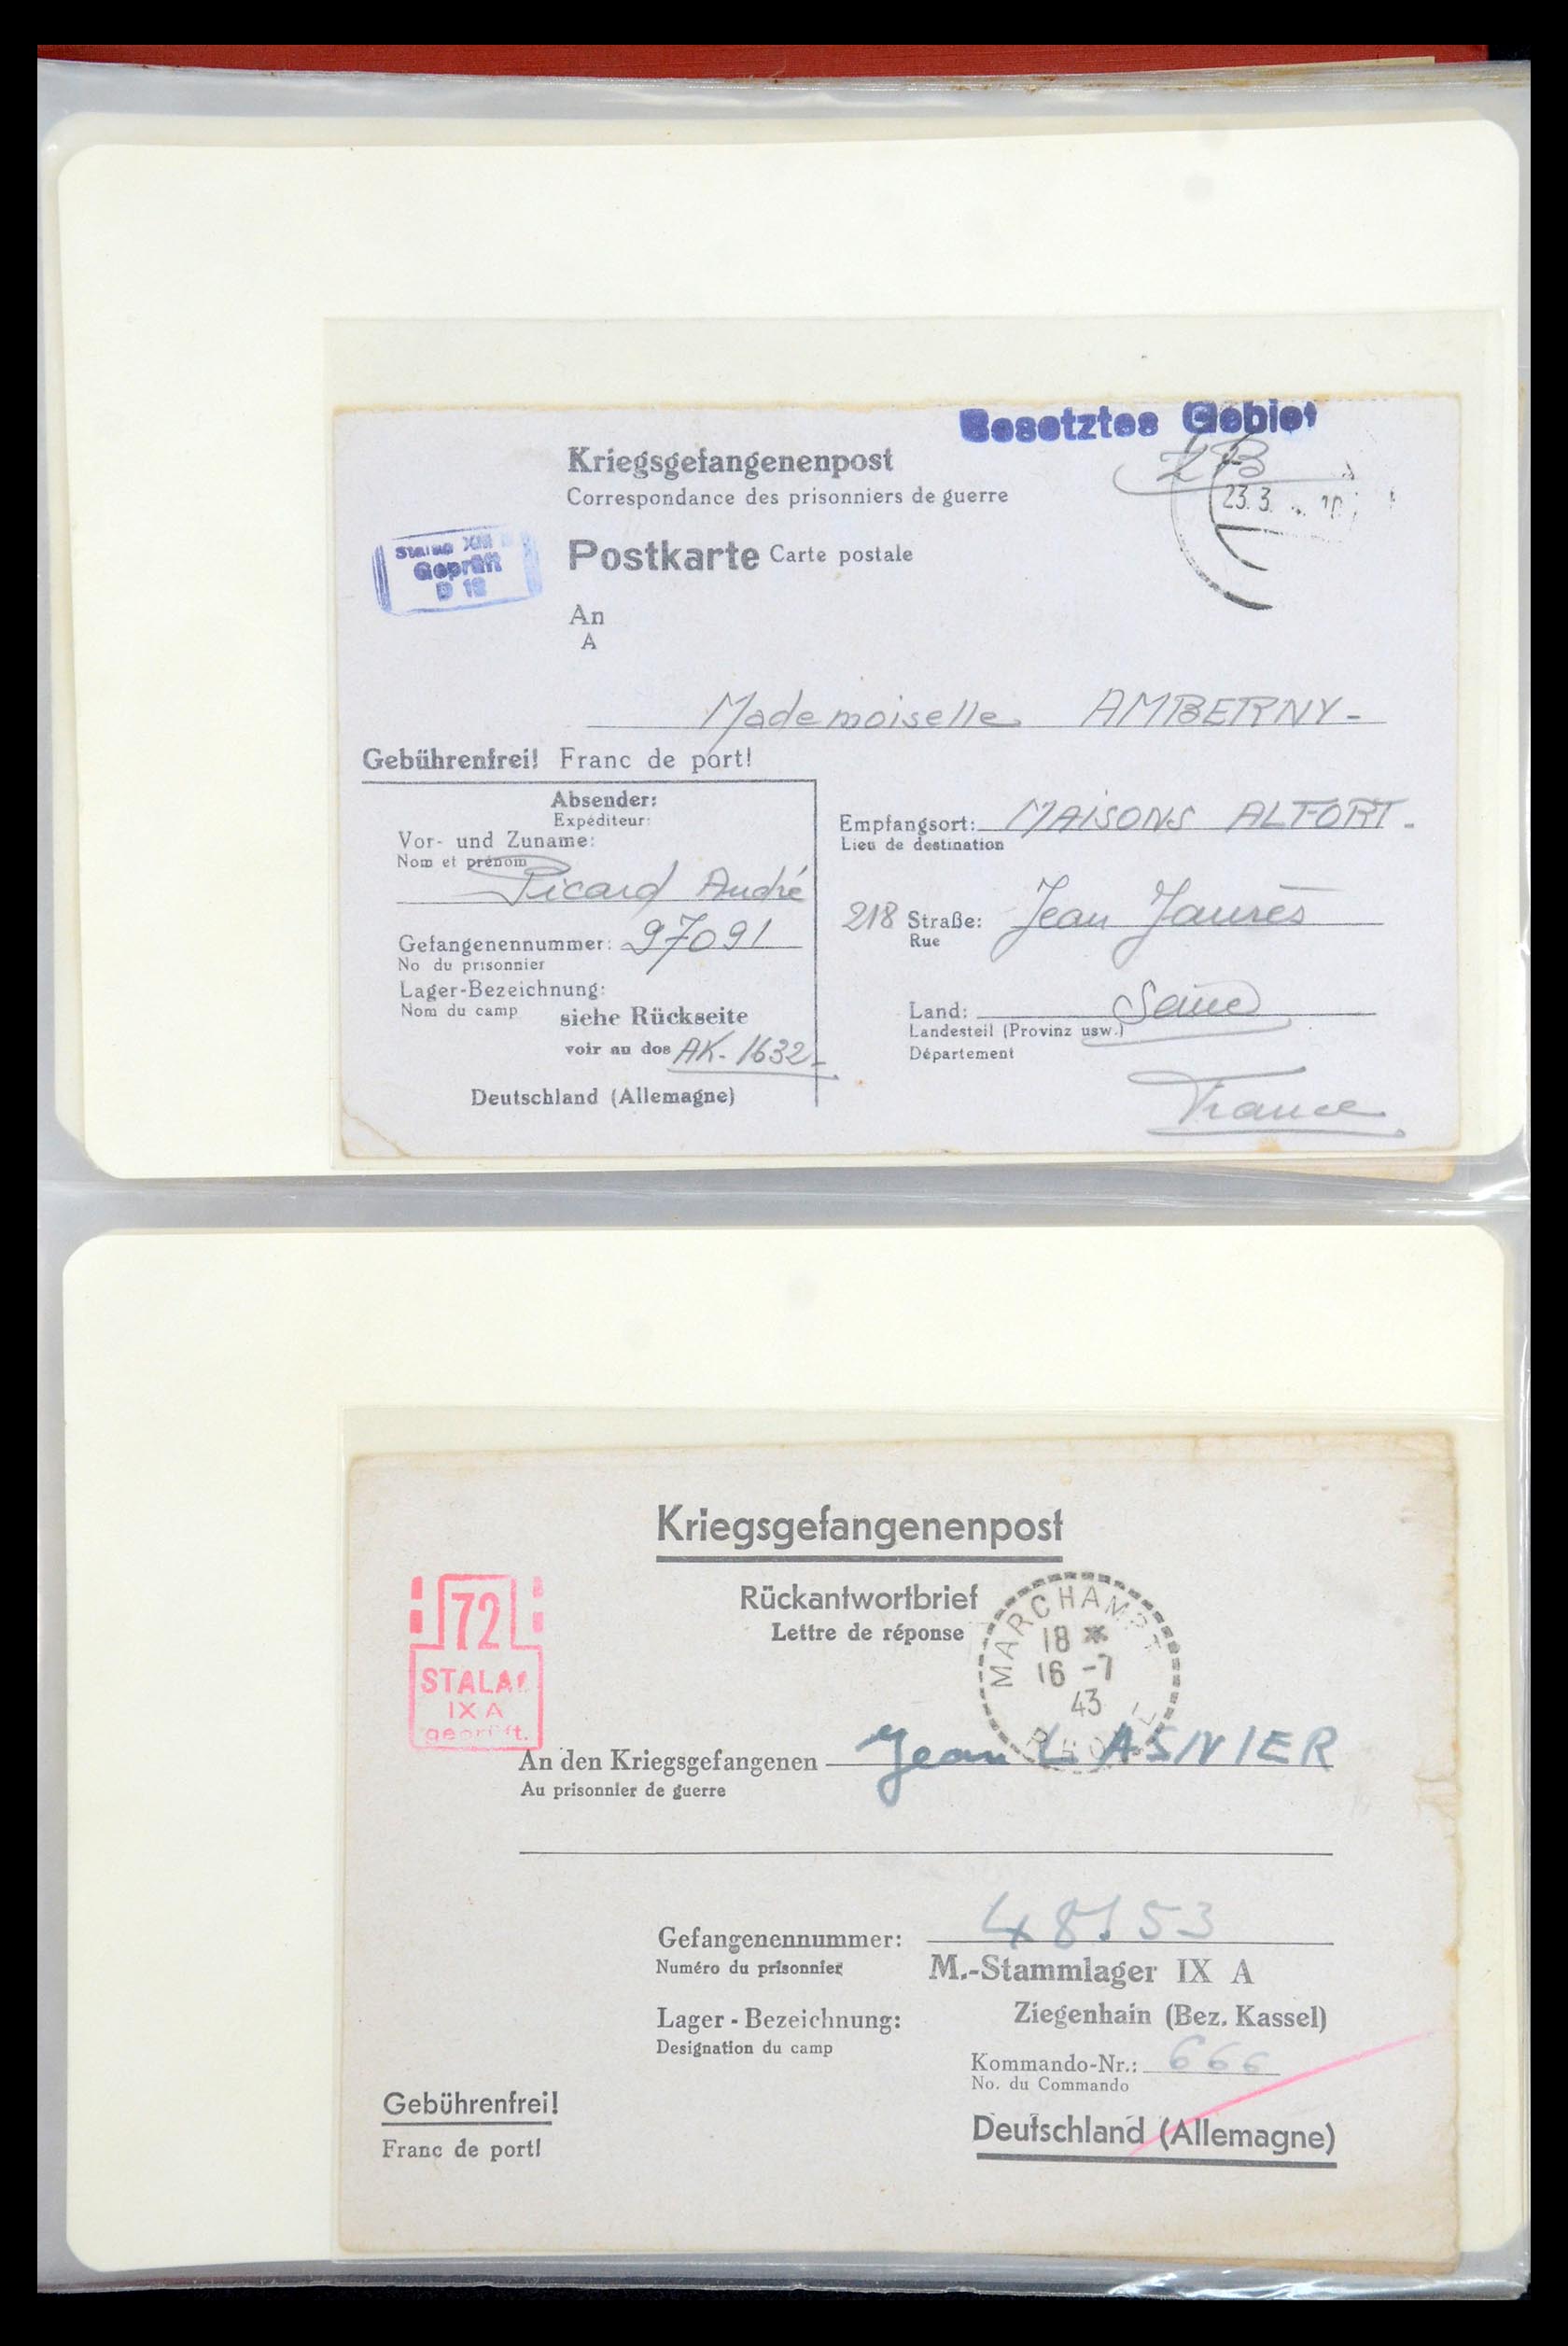 35599 005 - Stamp Collection 35599 Germany prisoner of war cards 1940-1944.